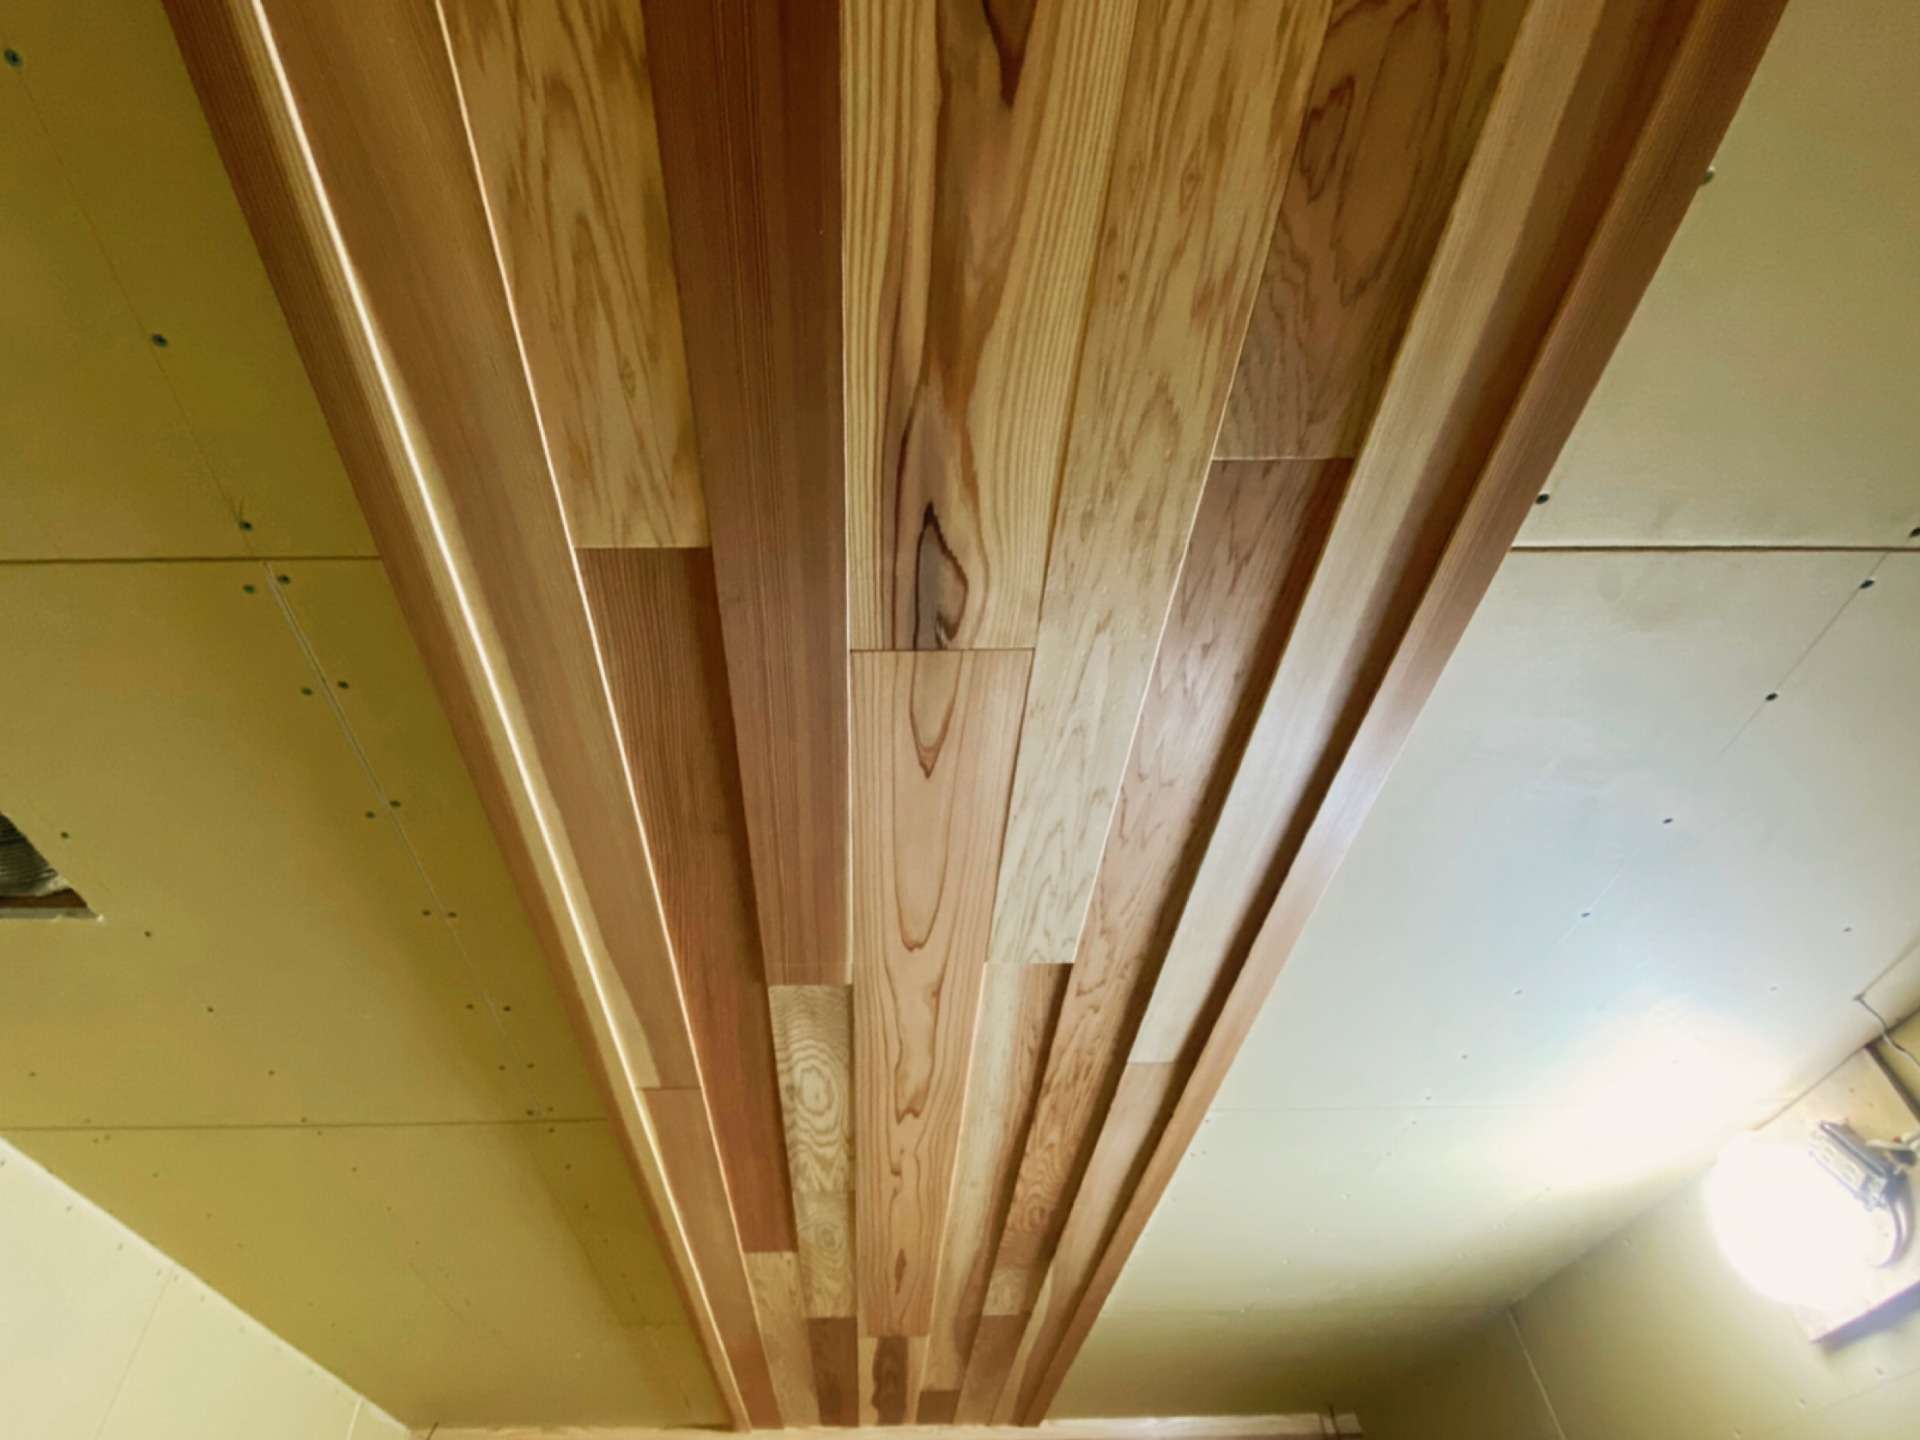 天井の杉板は濃淡を活かしまた凹凸をつけることでアクセントにしています。